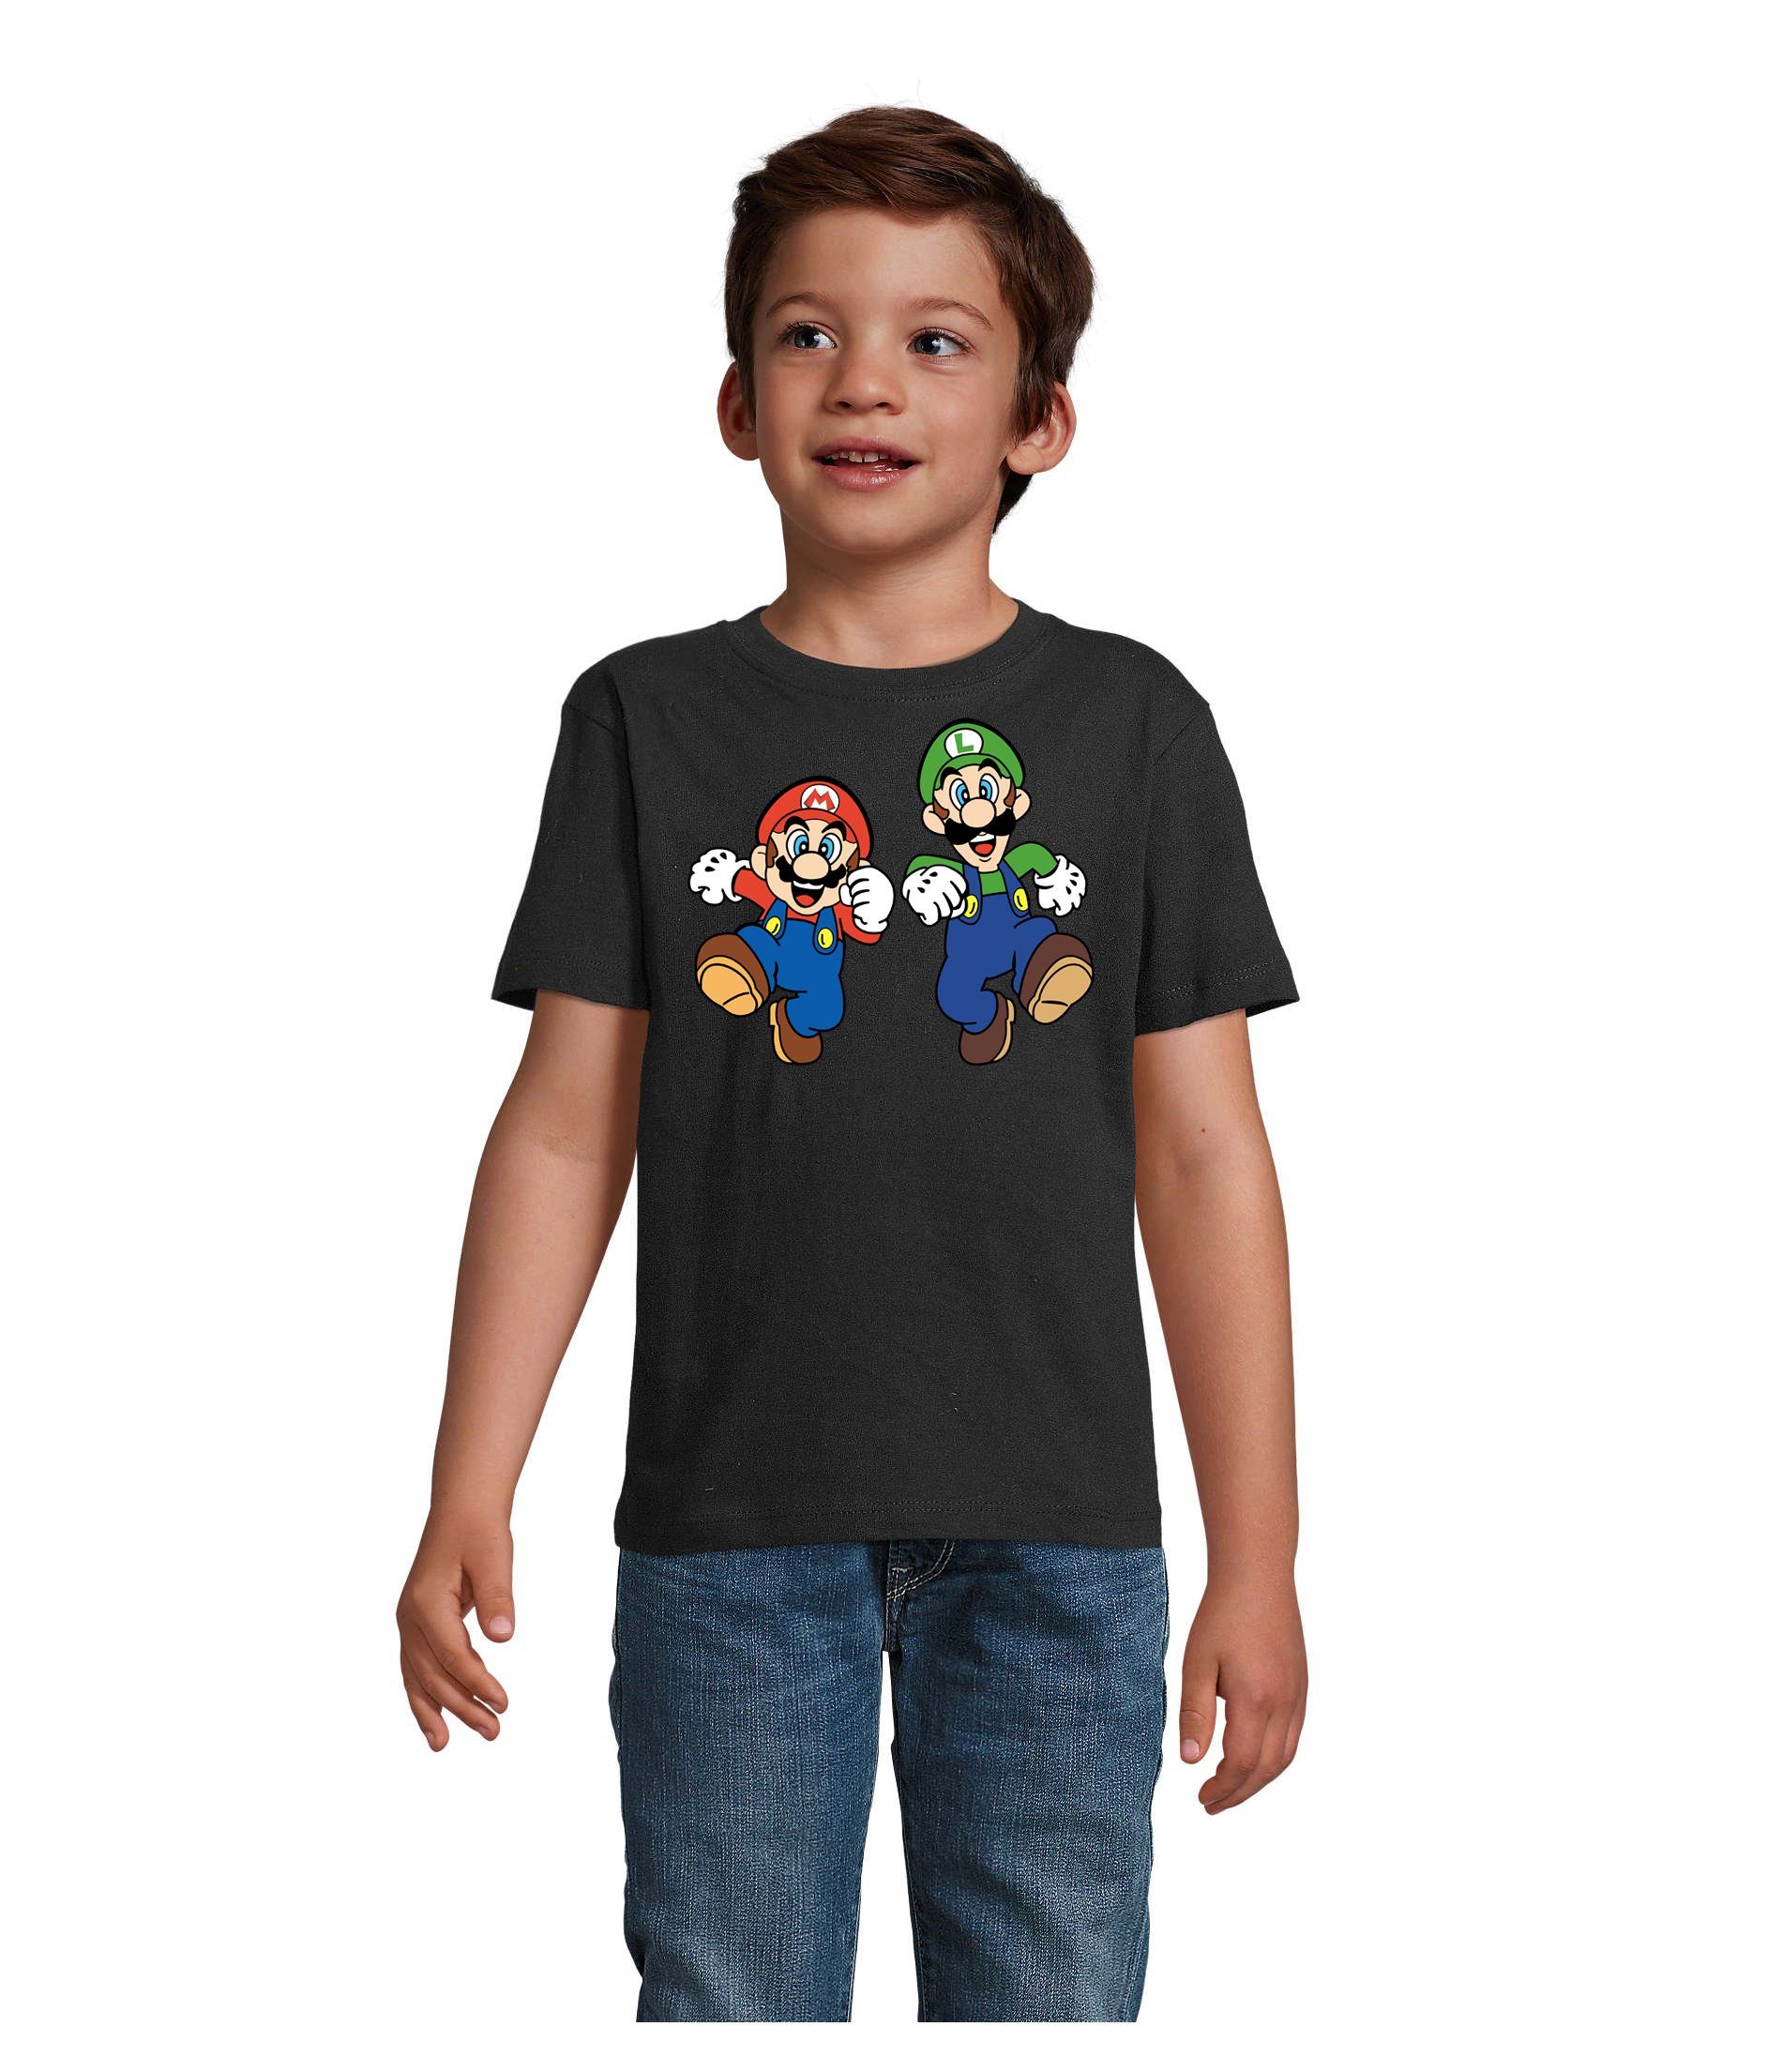 Blondie & Brownie T-Shirt Kinder Mario & Luigi Bowser Nintendo Yoshi Game Gamer Konsole Schwarz